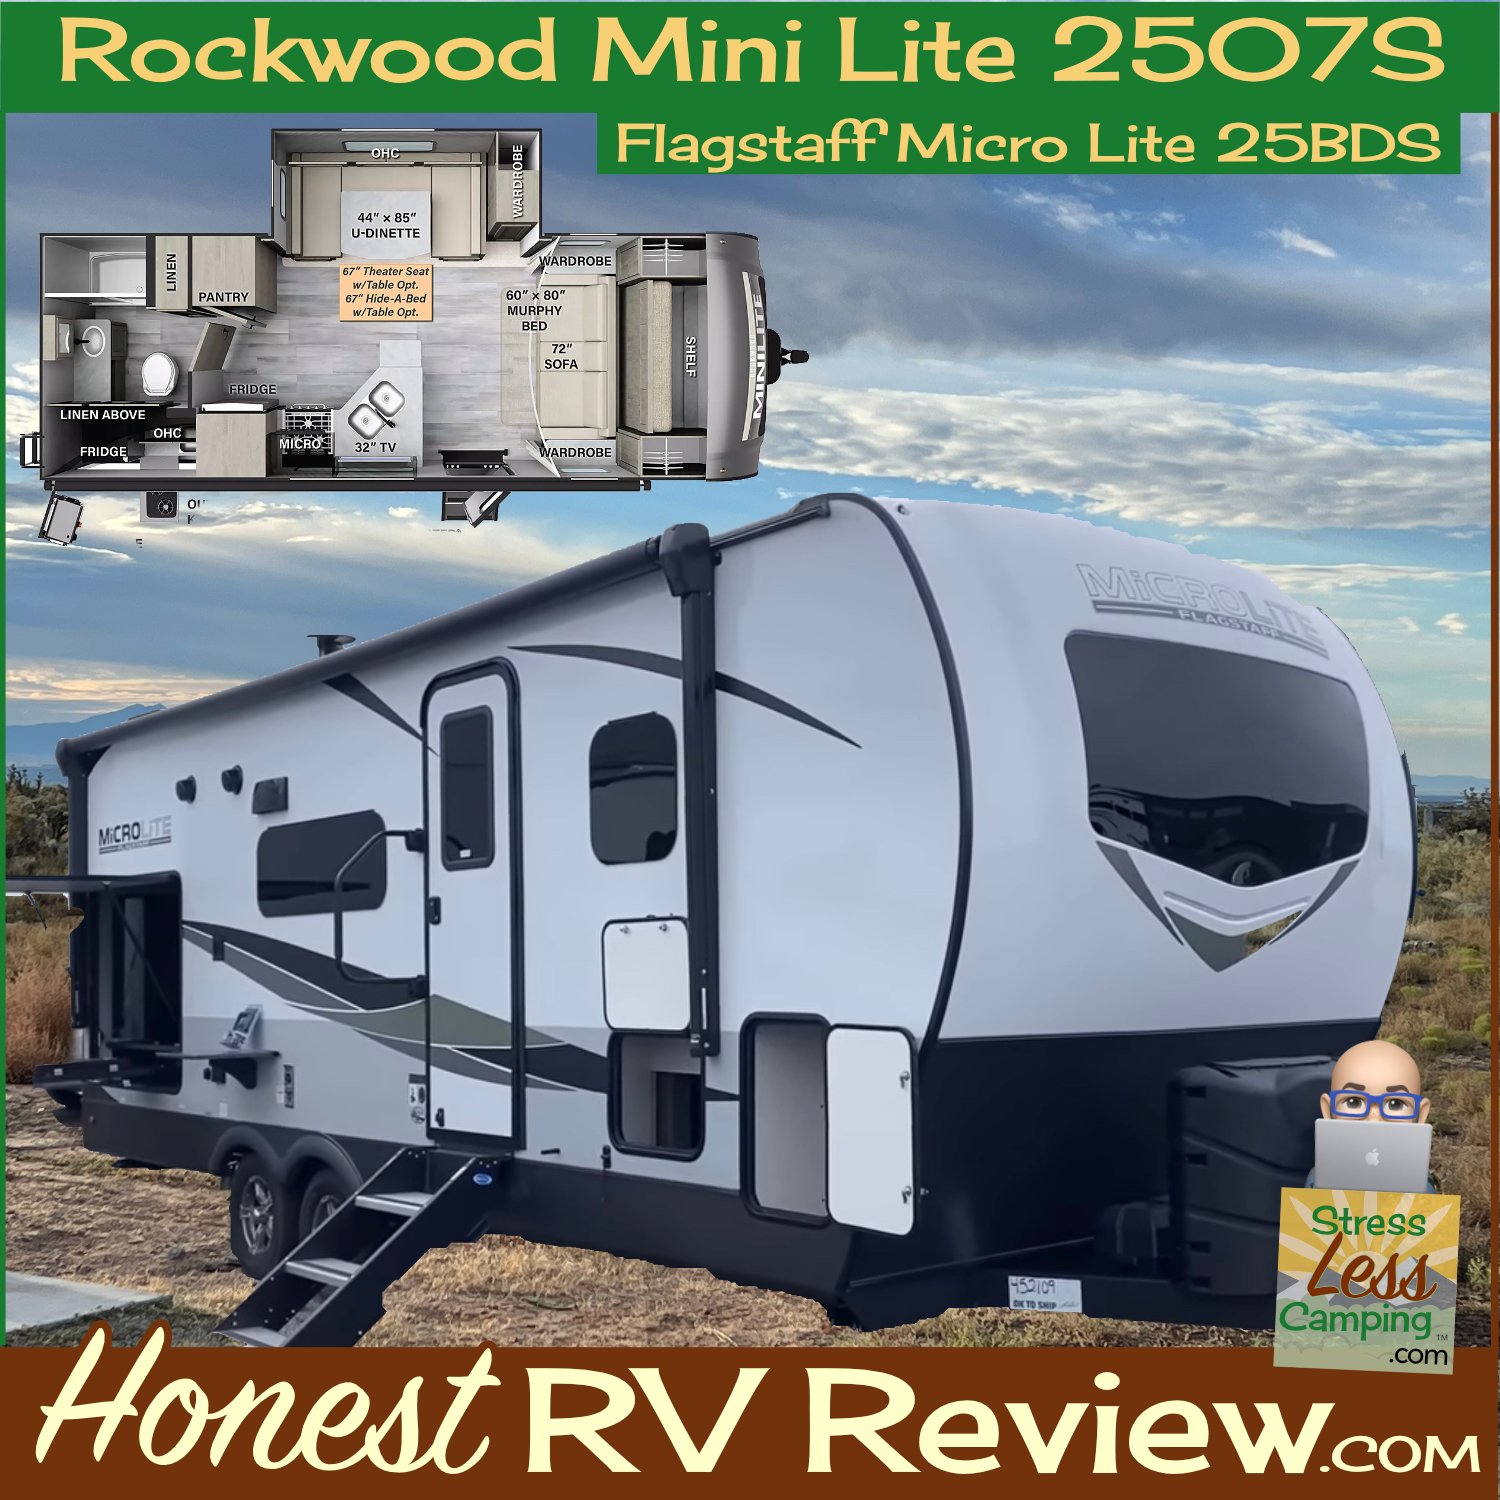 Honest RV review: Forest River Rockwood Mini Lite 2507s travel trailer